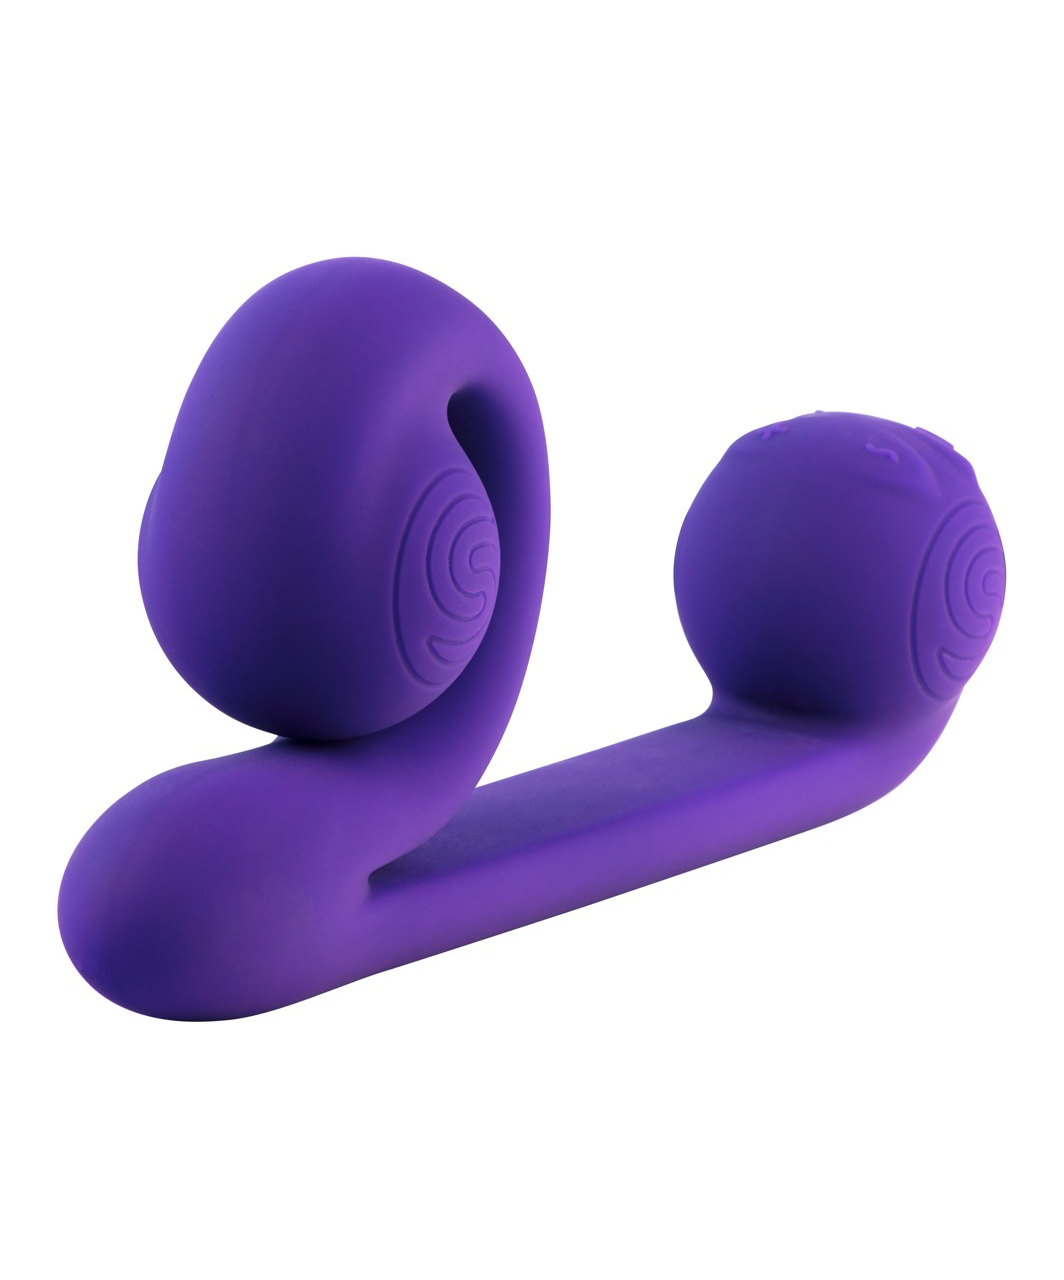 Snail Vibe Slide'n'Roll Dual vibratorius